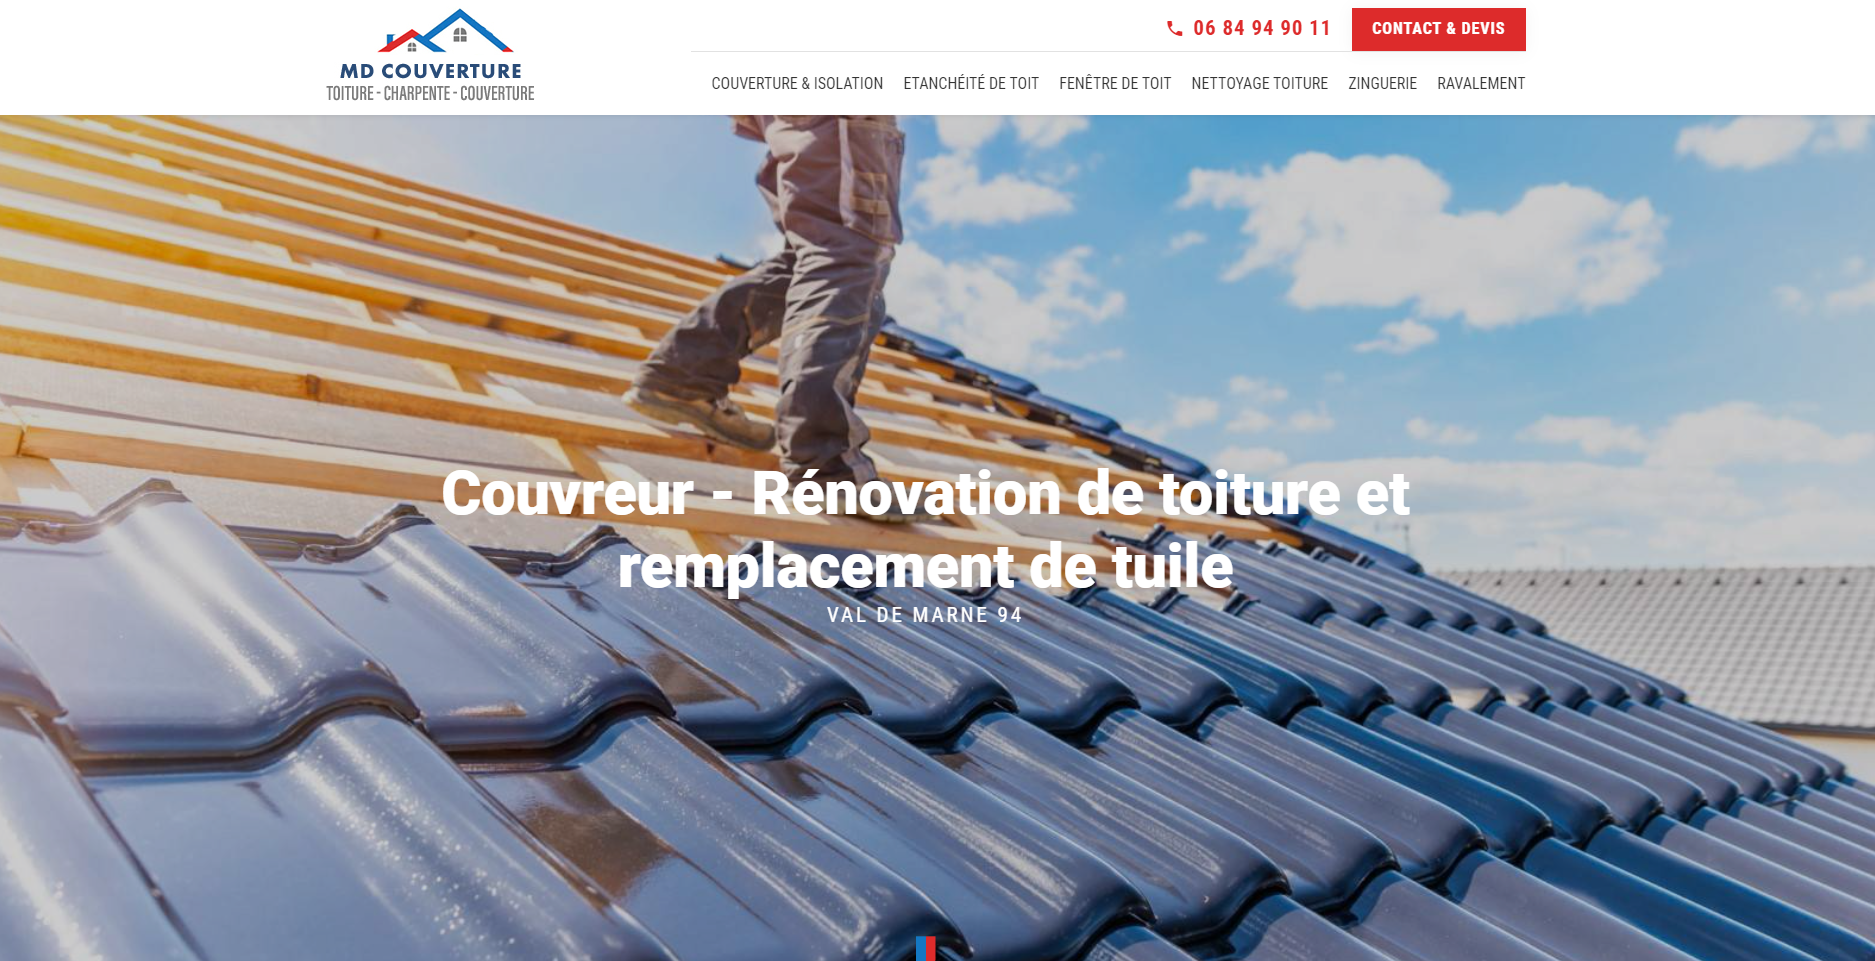  Vous cherchez un artisan couvreur pour la rénovation de votre toiture proche de Vitry-sur-Seine ?